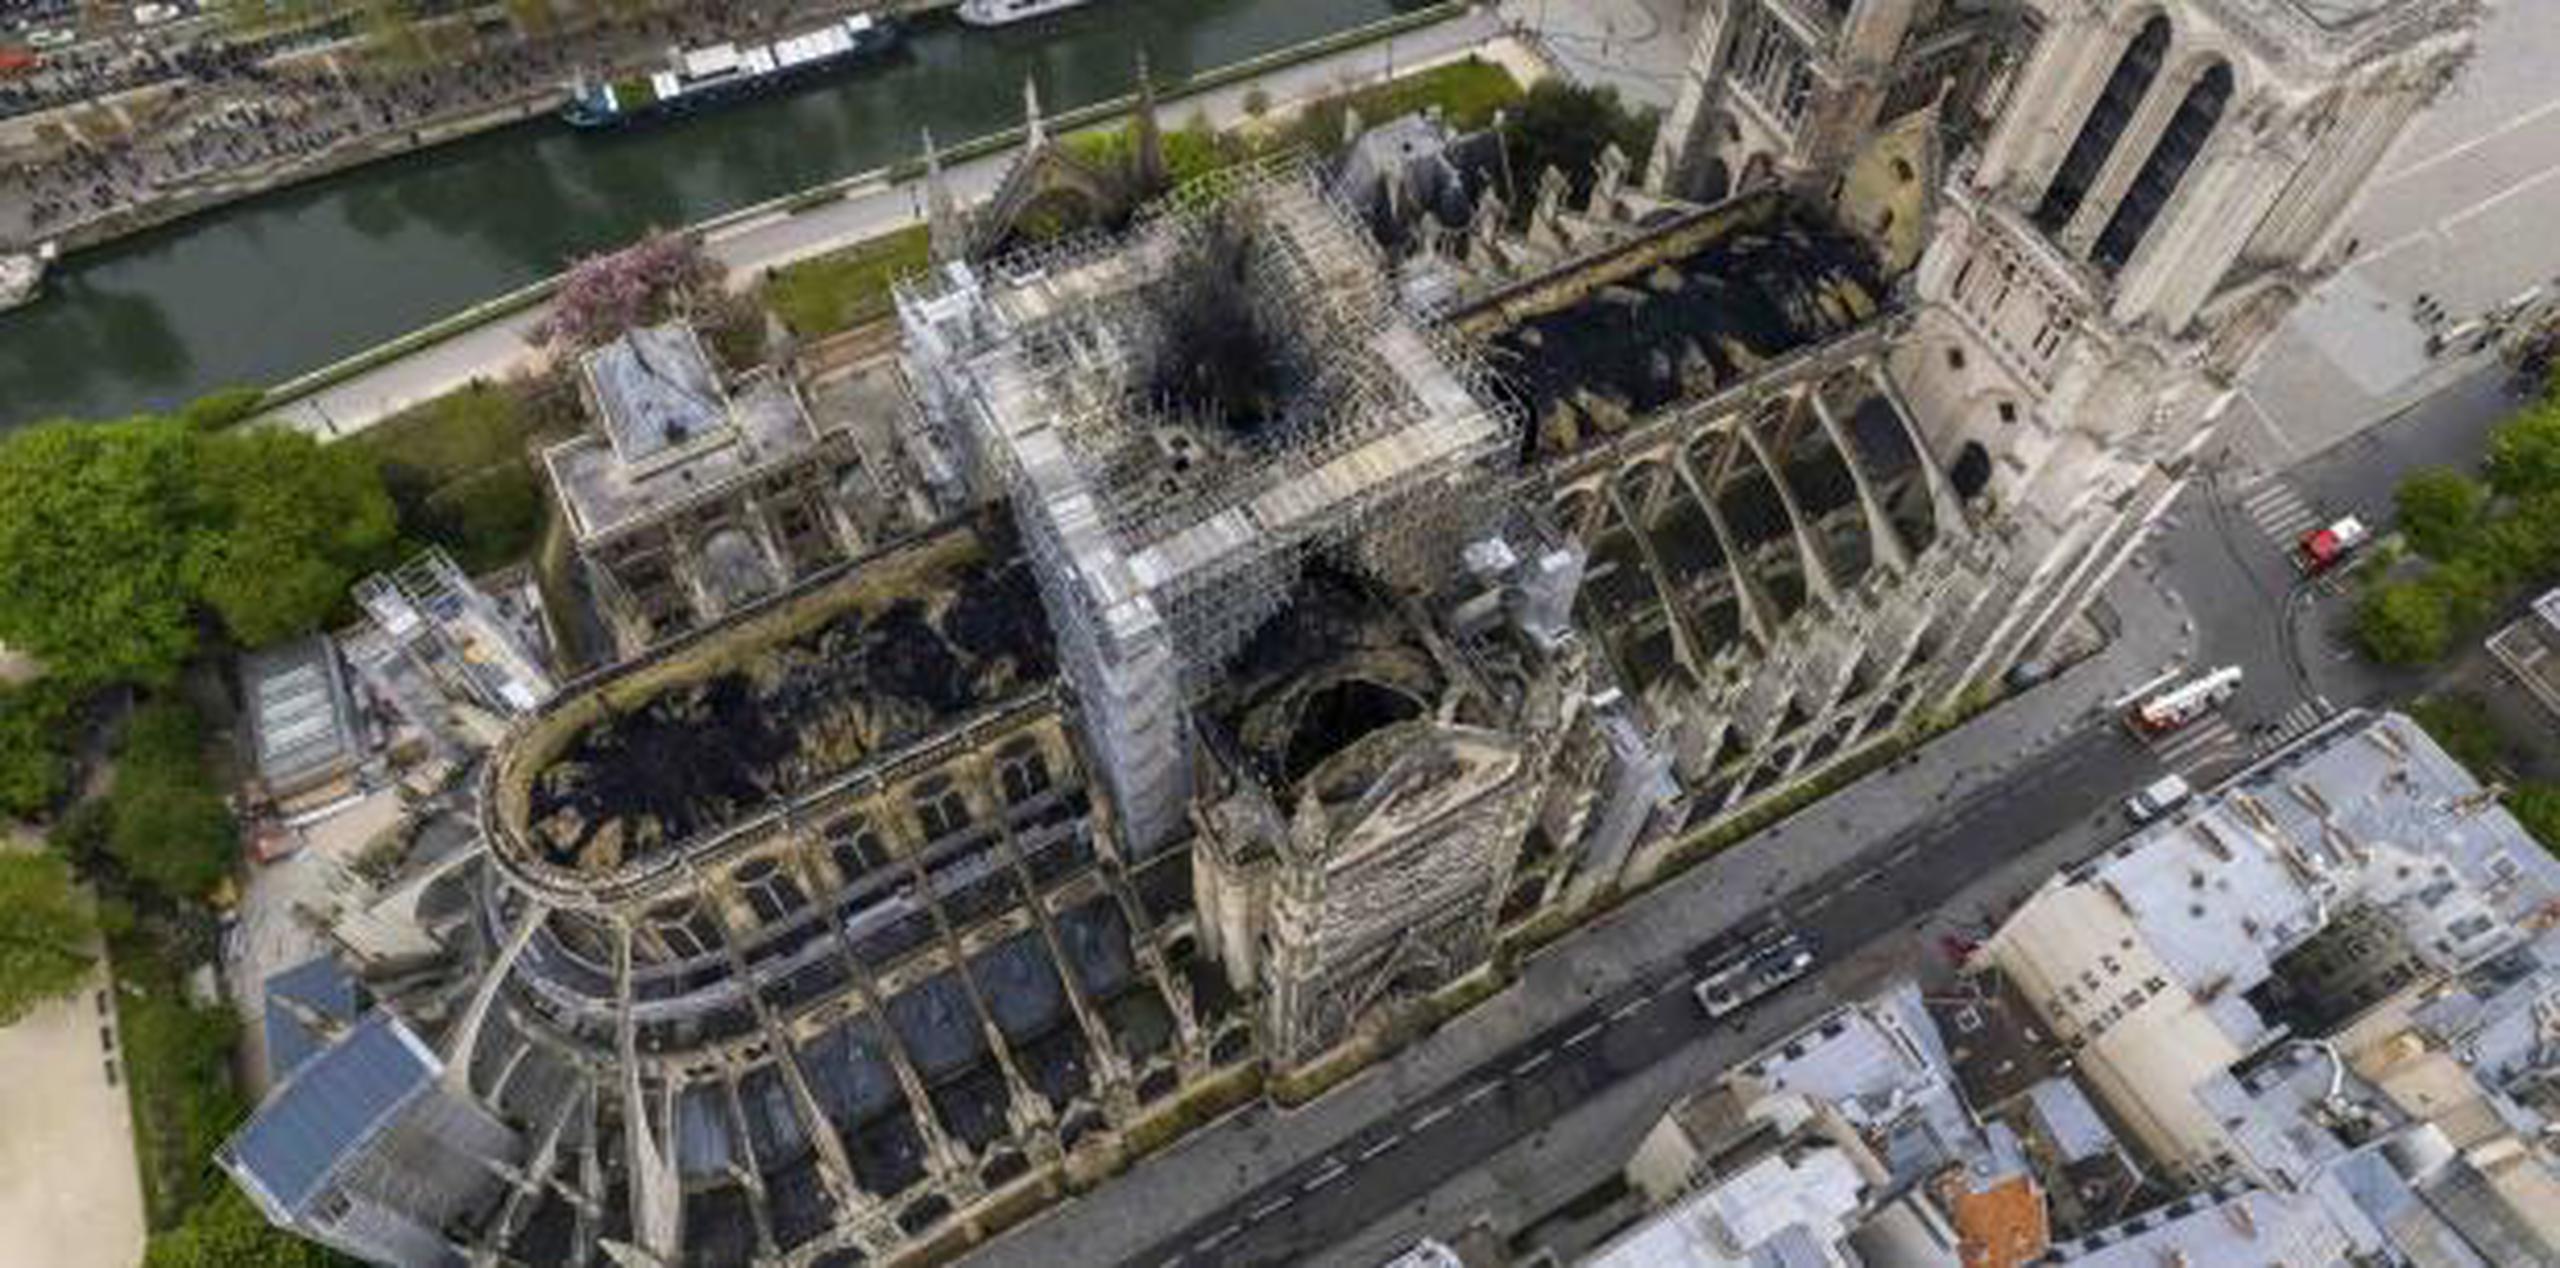 Los acuerdos para la recuperación de Notre Dame siguen a meses de demoras que dejaron a las autoridades dependiendo de pequeñas donaciones caritativas. (Archivo)